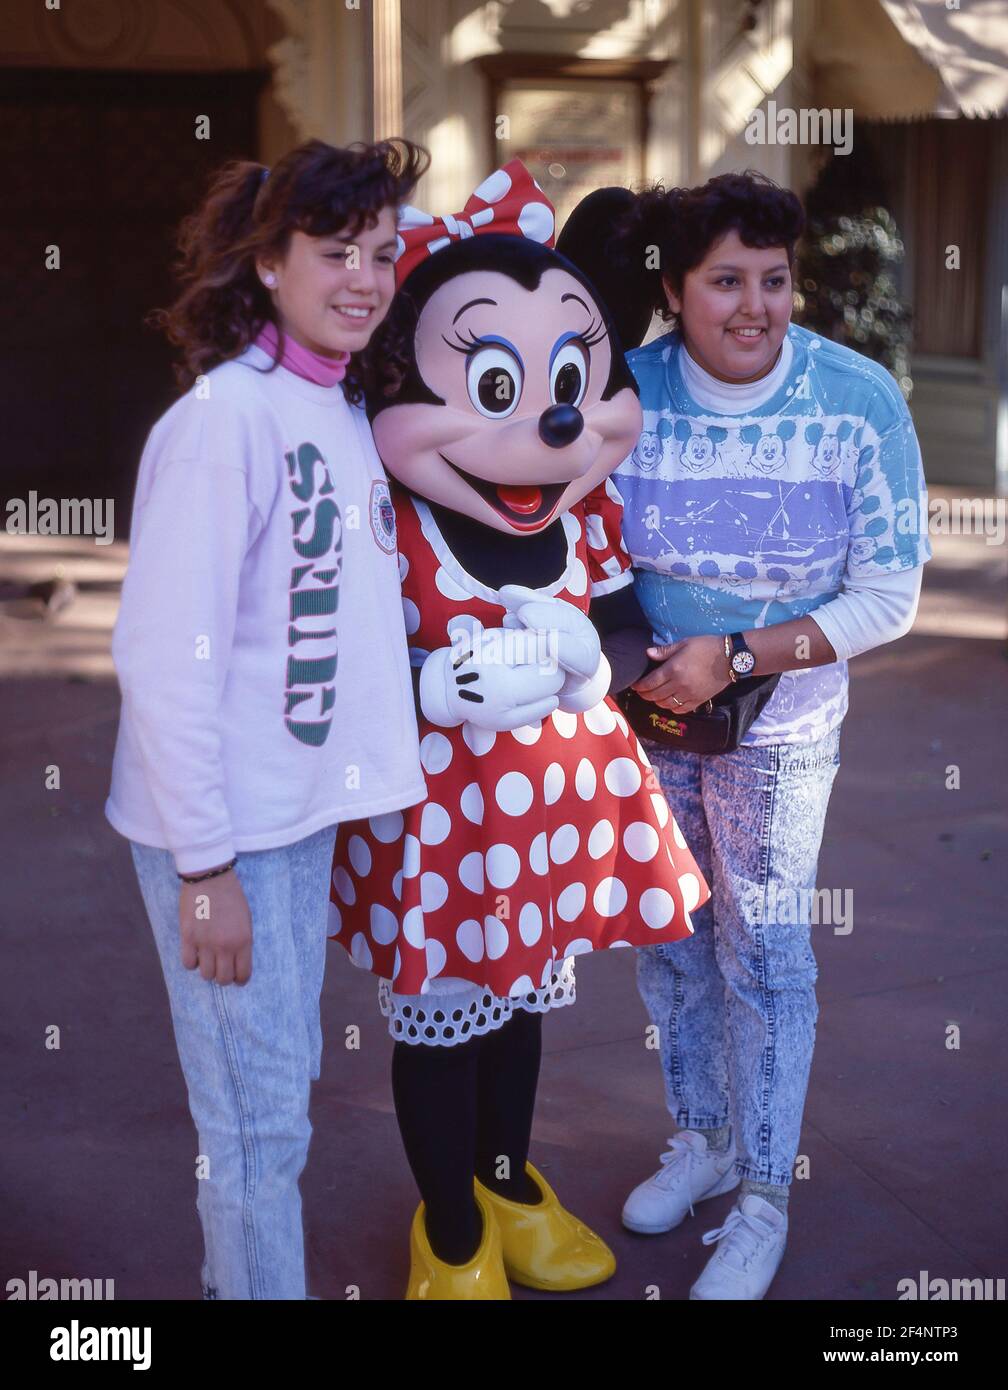 Jeunes femmes avec personnage Minnie, Fantasyland, Disneyland, Anaheim, Californie, États-Unis d'Amérique Banque D'Images